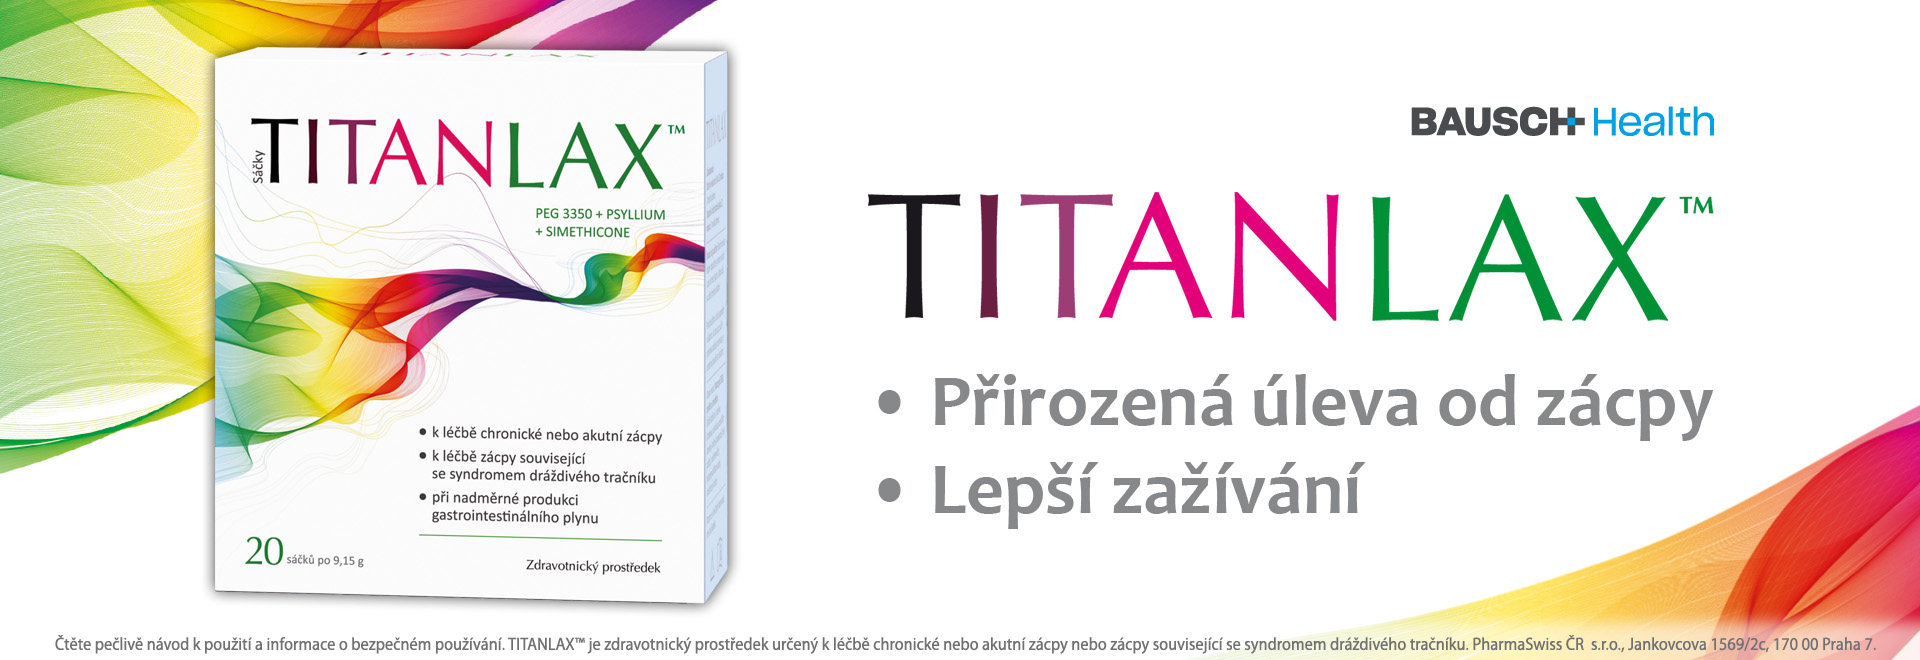 Titanlax-1920x660px